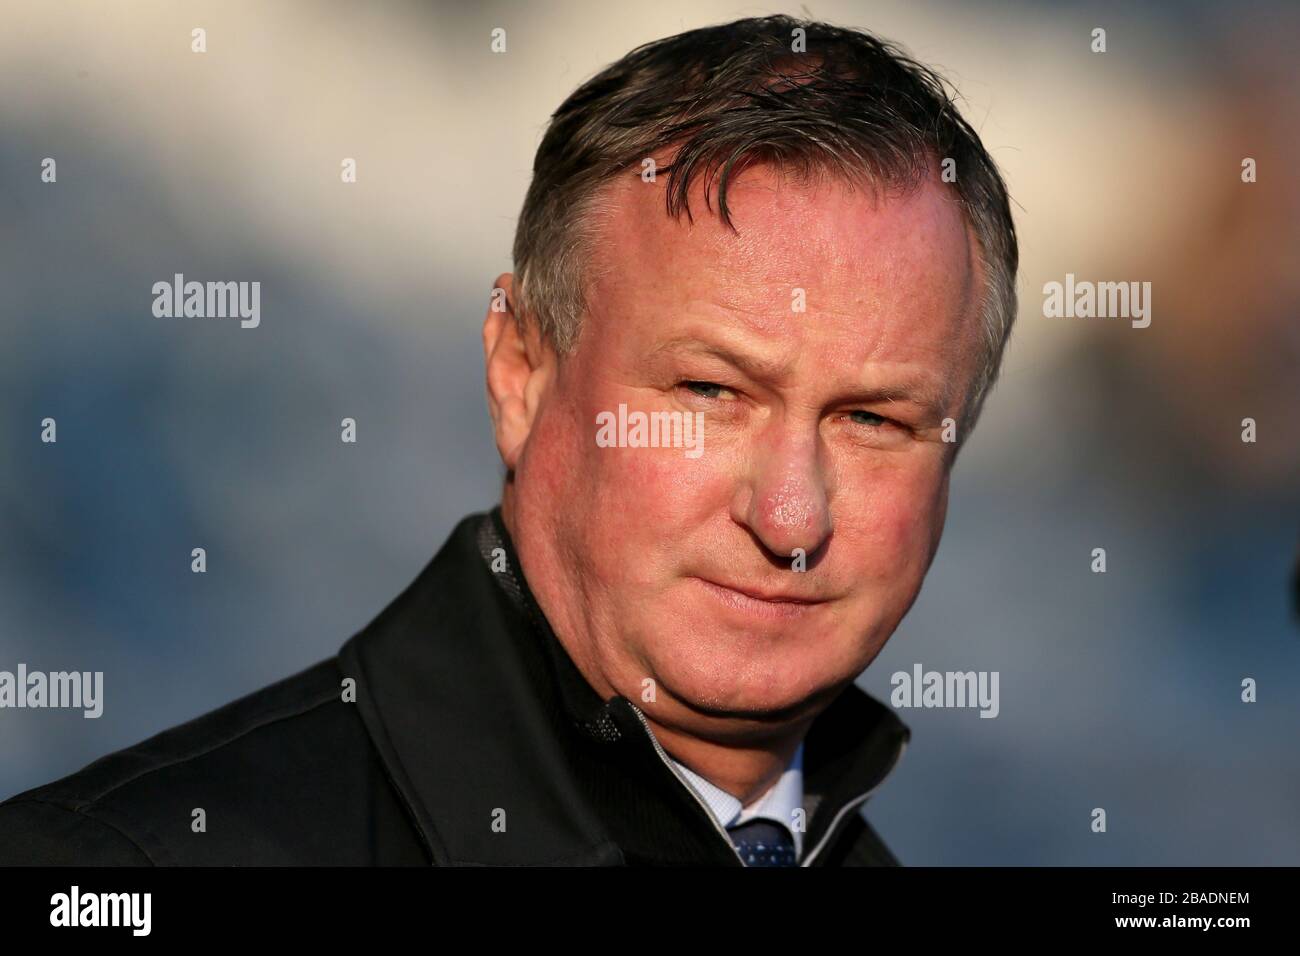 Stoke City manager Michael O'Neill at John Smith's stadium Stock Photo ...